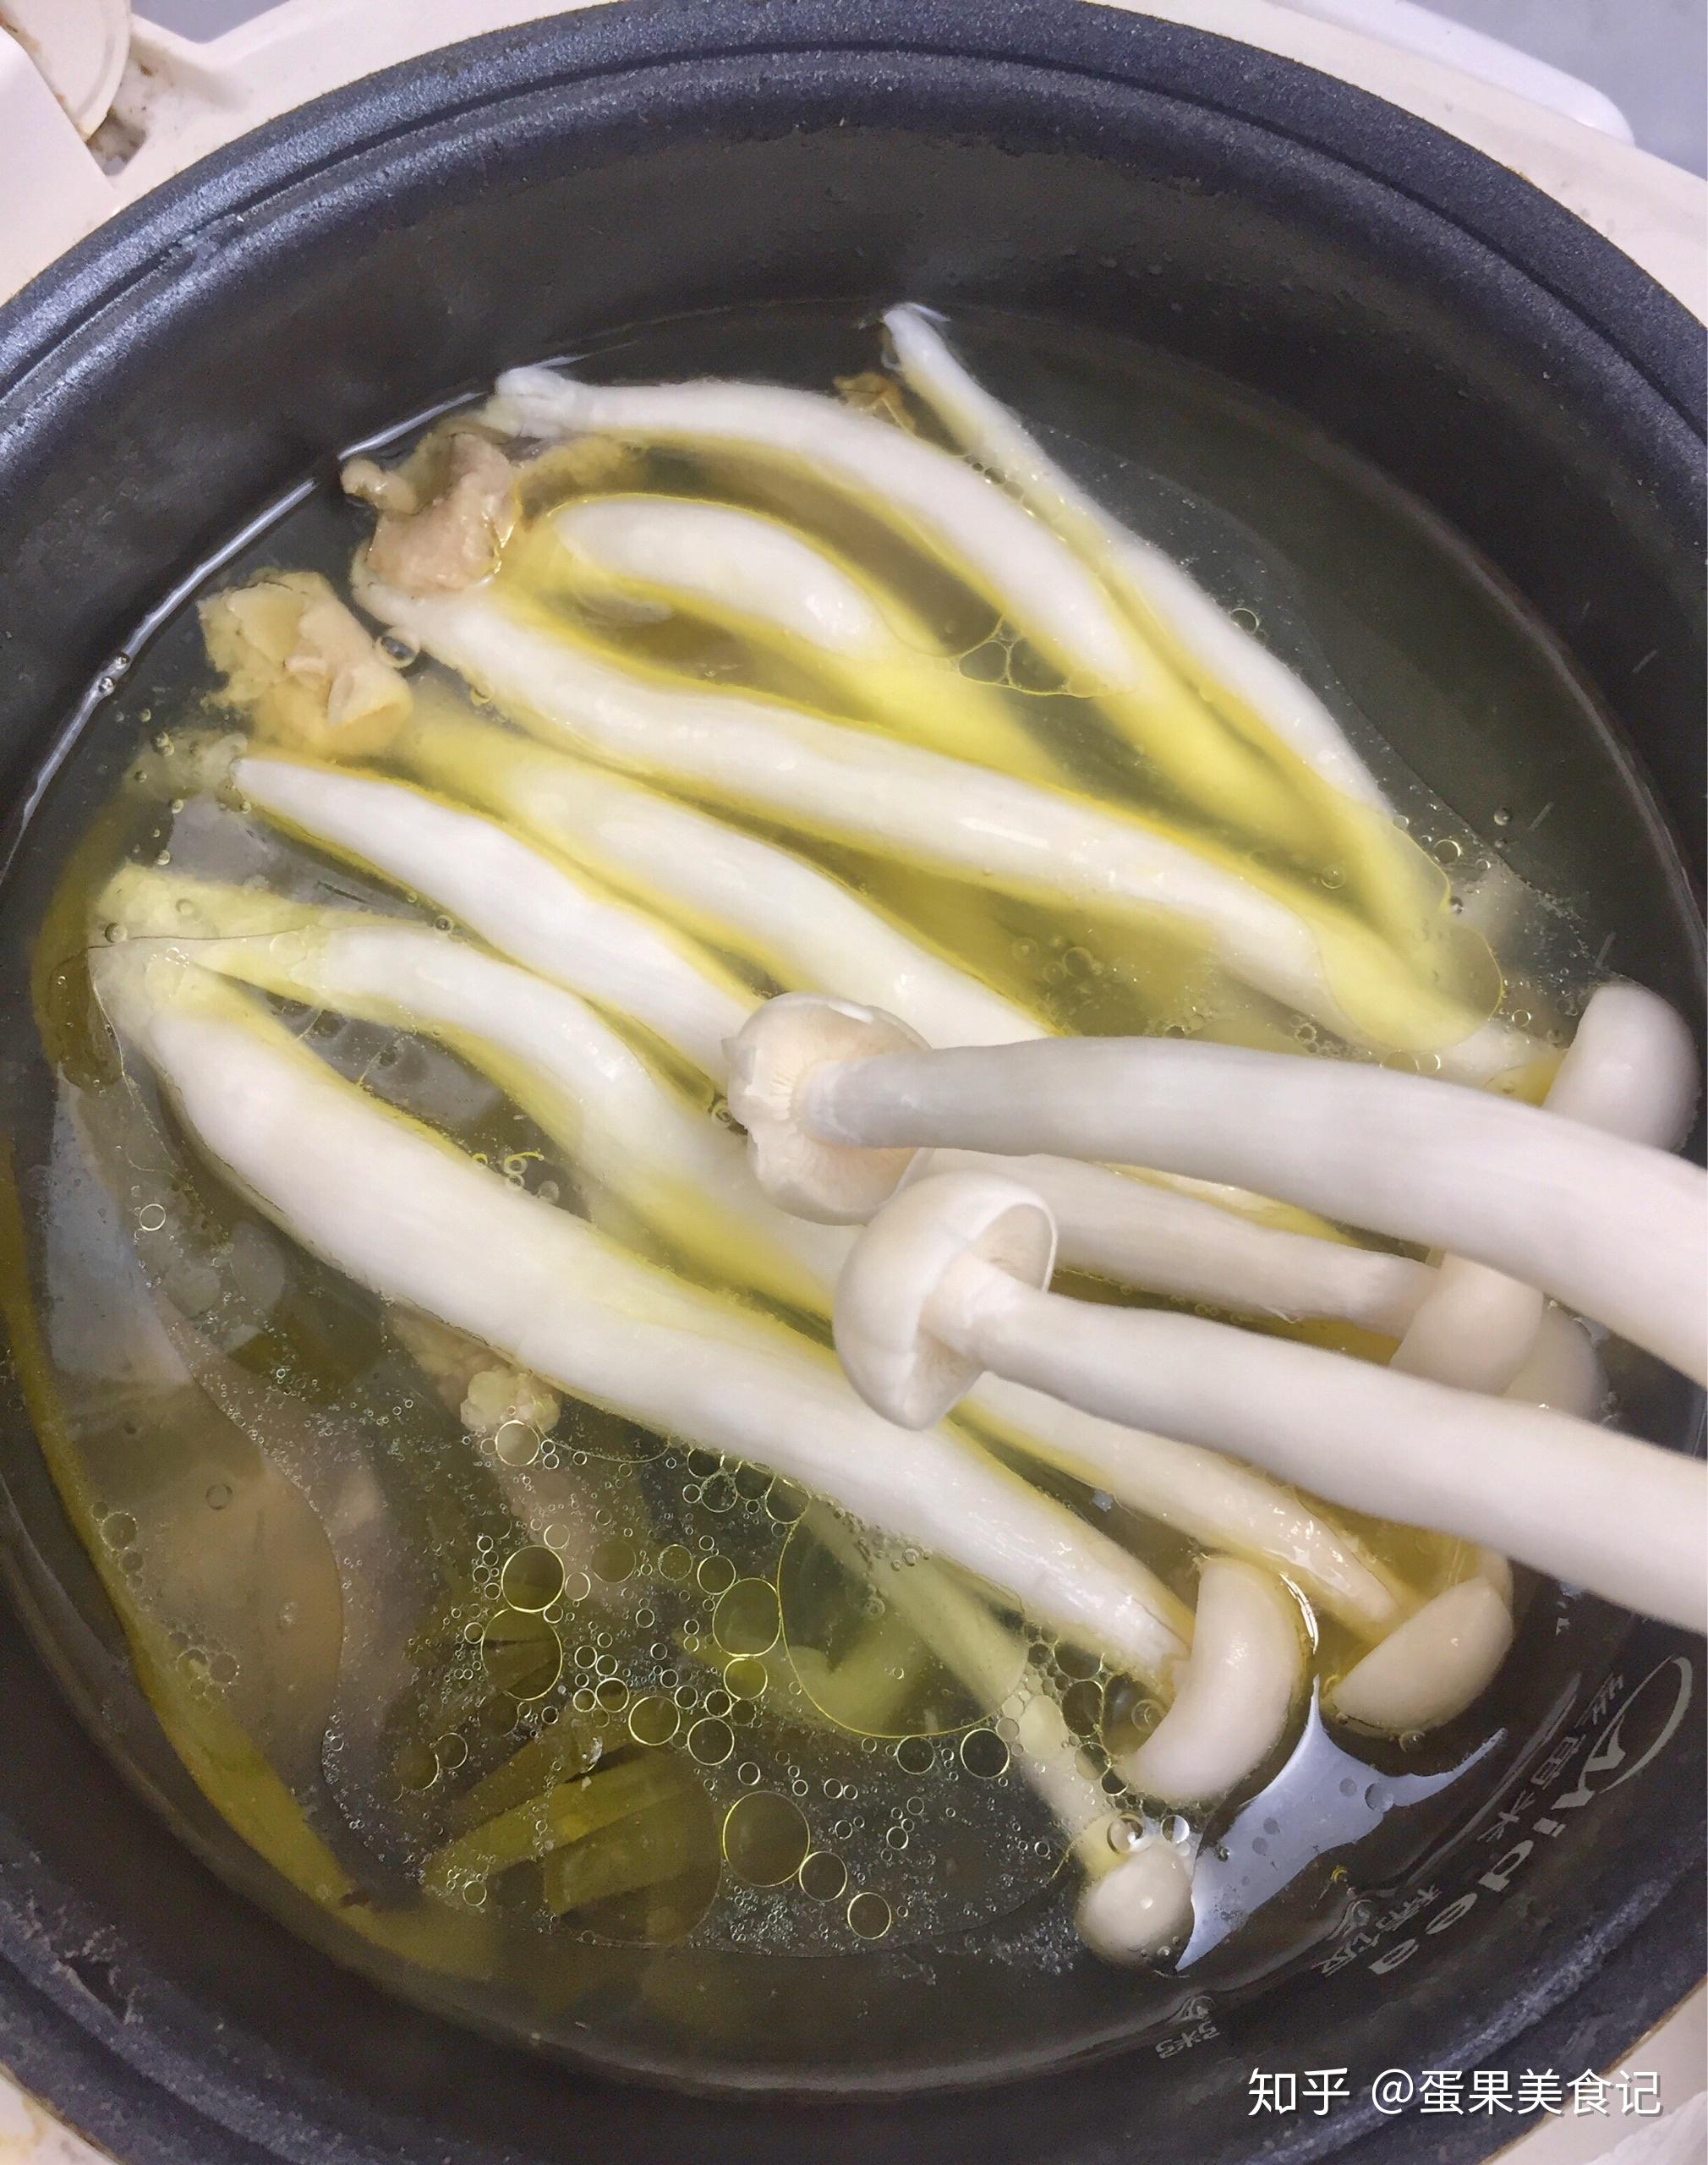 菌菇海参汤,菌菇海参汤的家常做法 - 美食杰菌菇海参汤做法大全